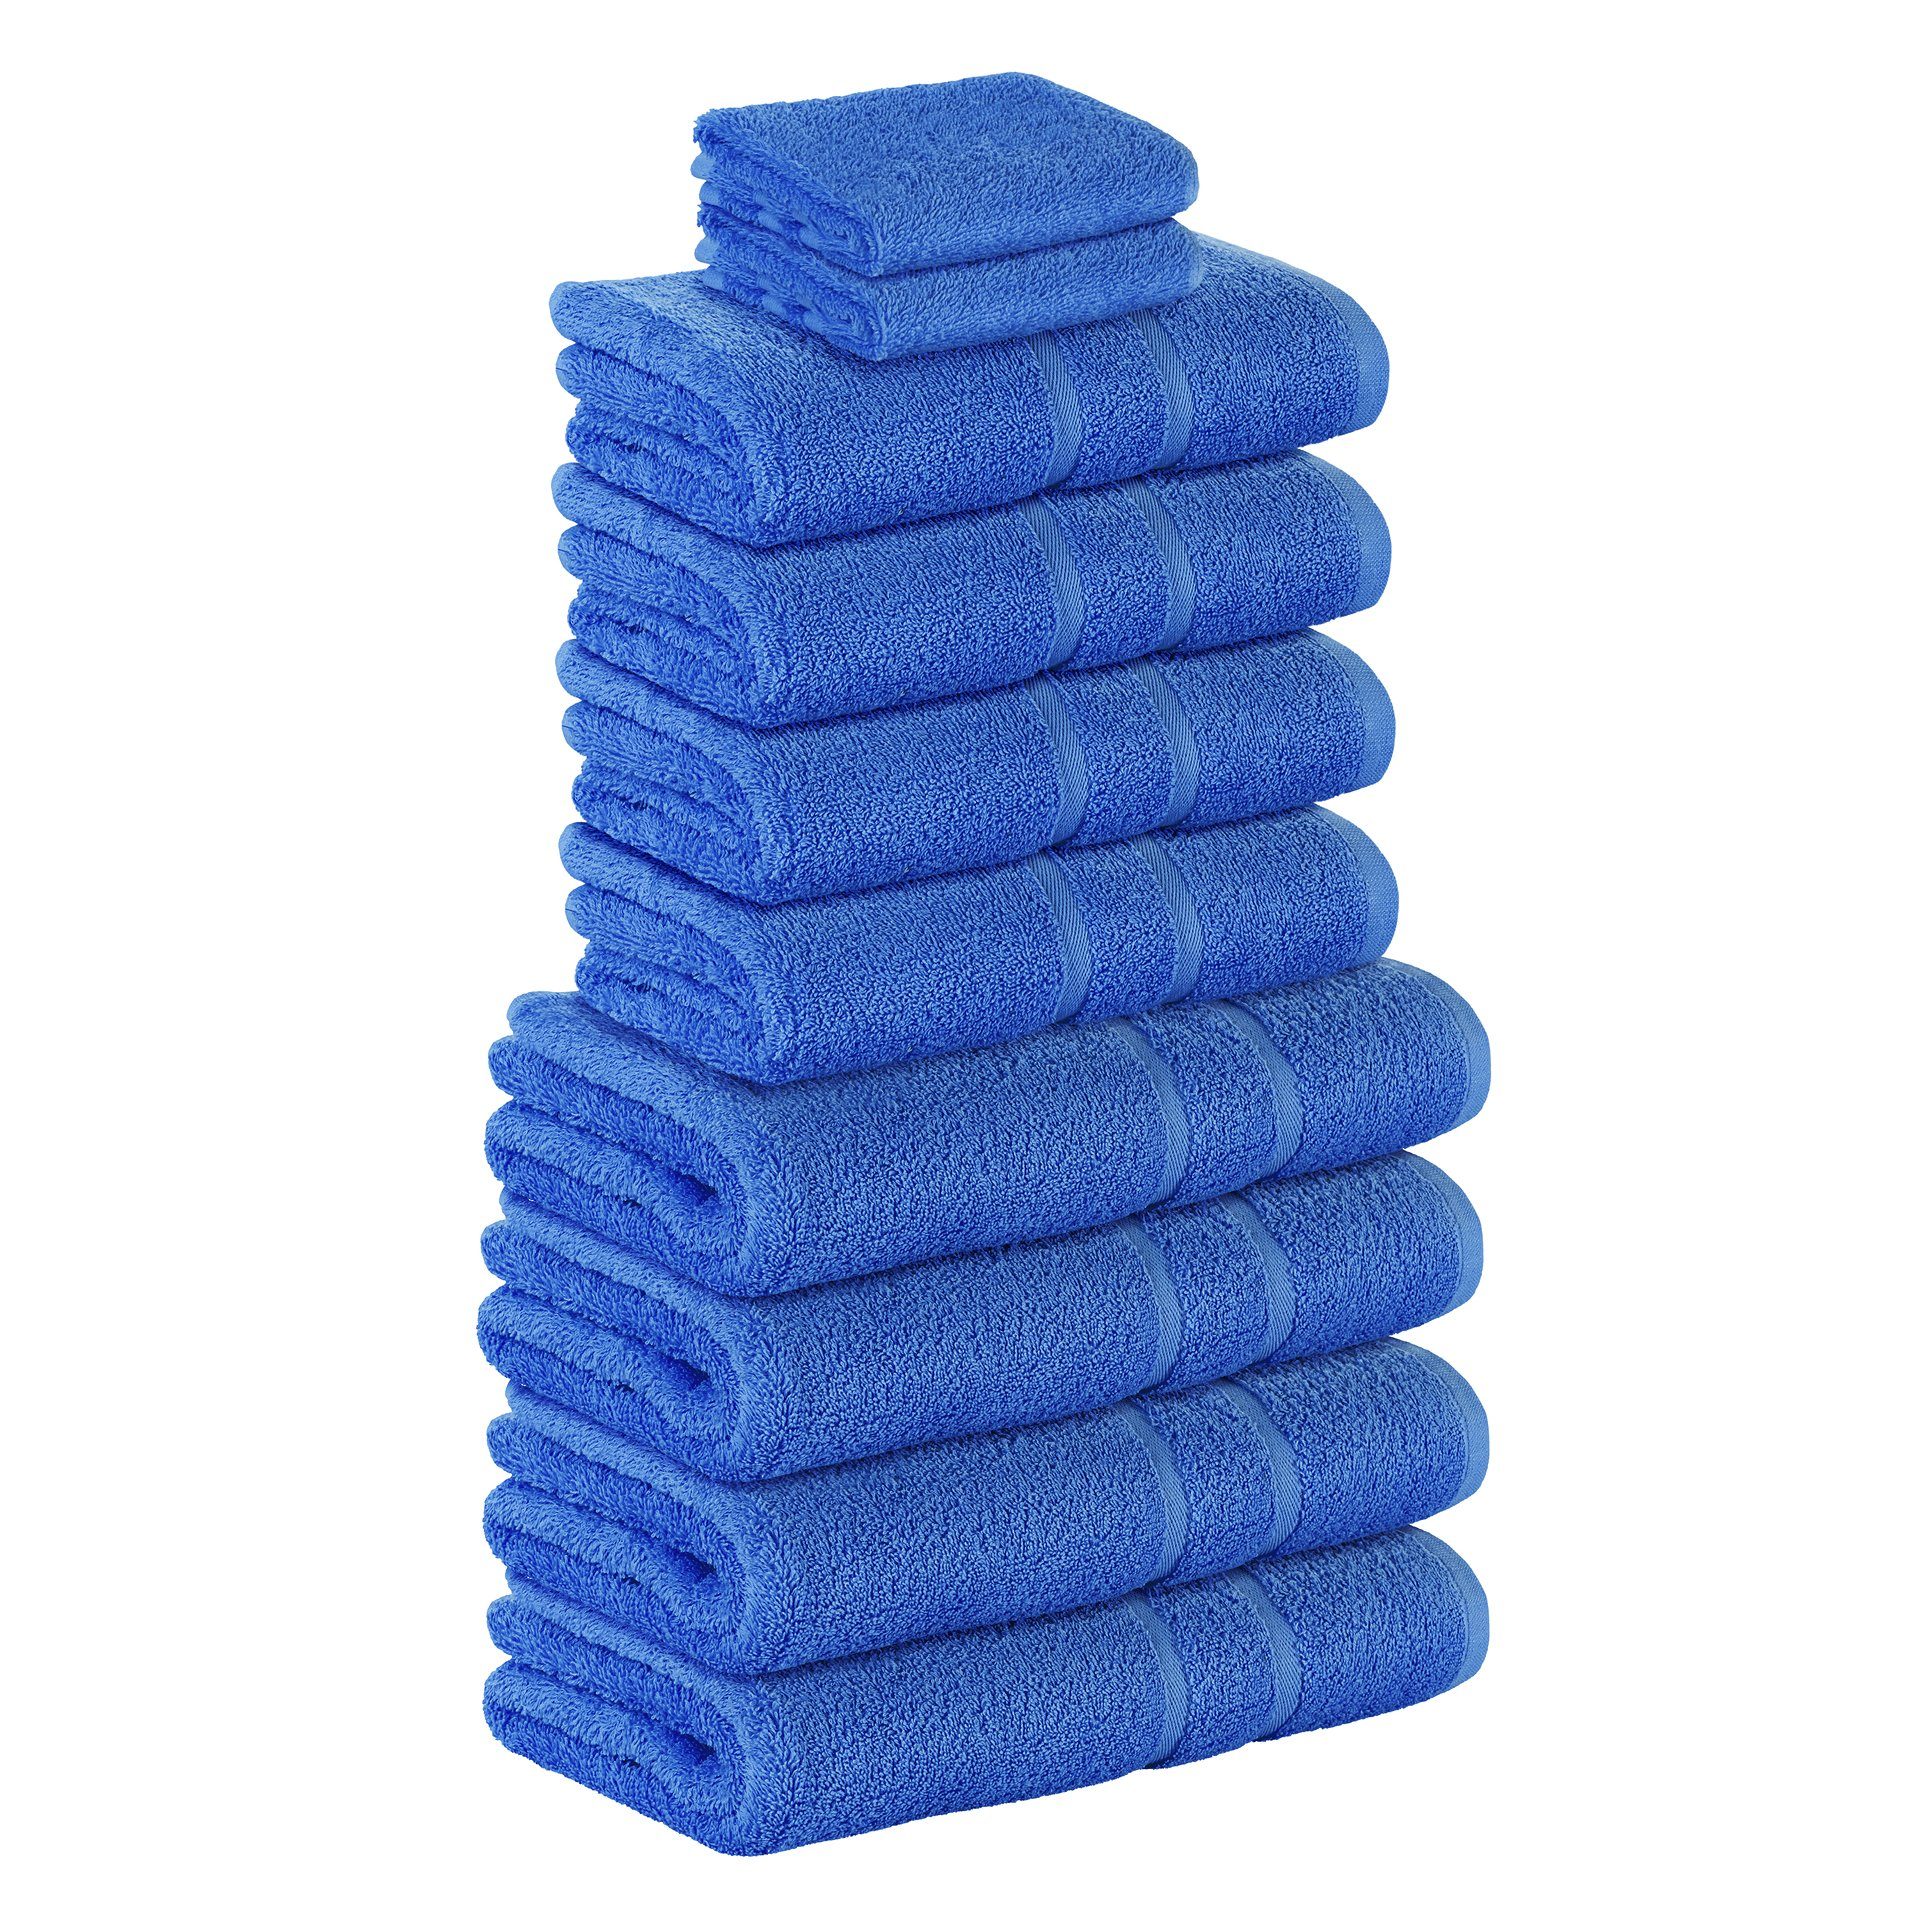 StickandShine Handtuch Set 2x Gästehandtuch 4x Handtücher 4x Duschtücher als SET in verschiedenen Farben (10 Teilig) 100% Baumwolle 500 GSM Frottee 10er Handtuch Pack, (Spar-set), 100% Baumwolle 500 GSM Blau